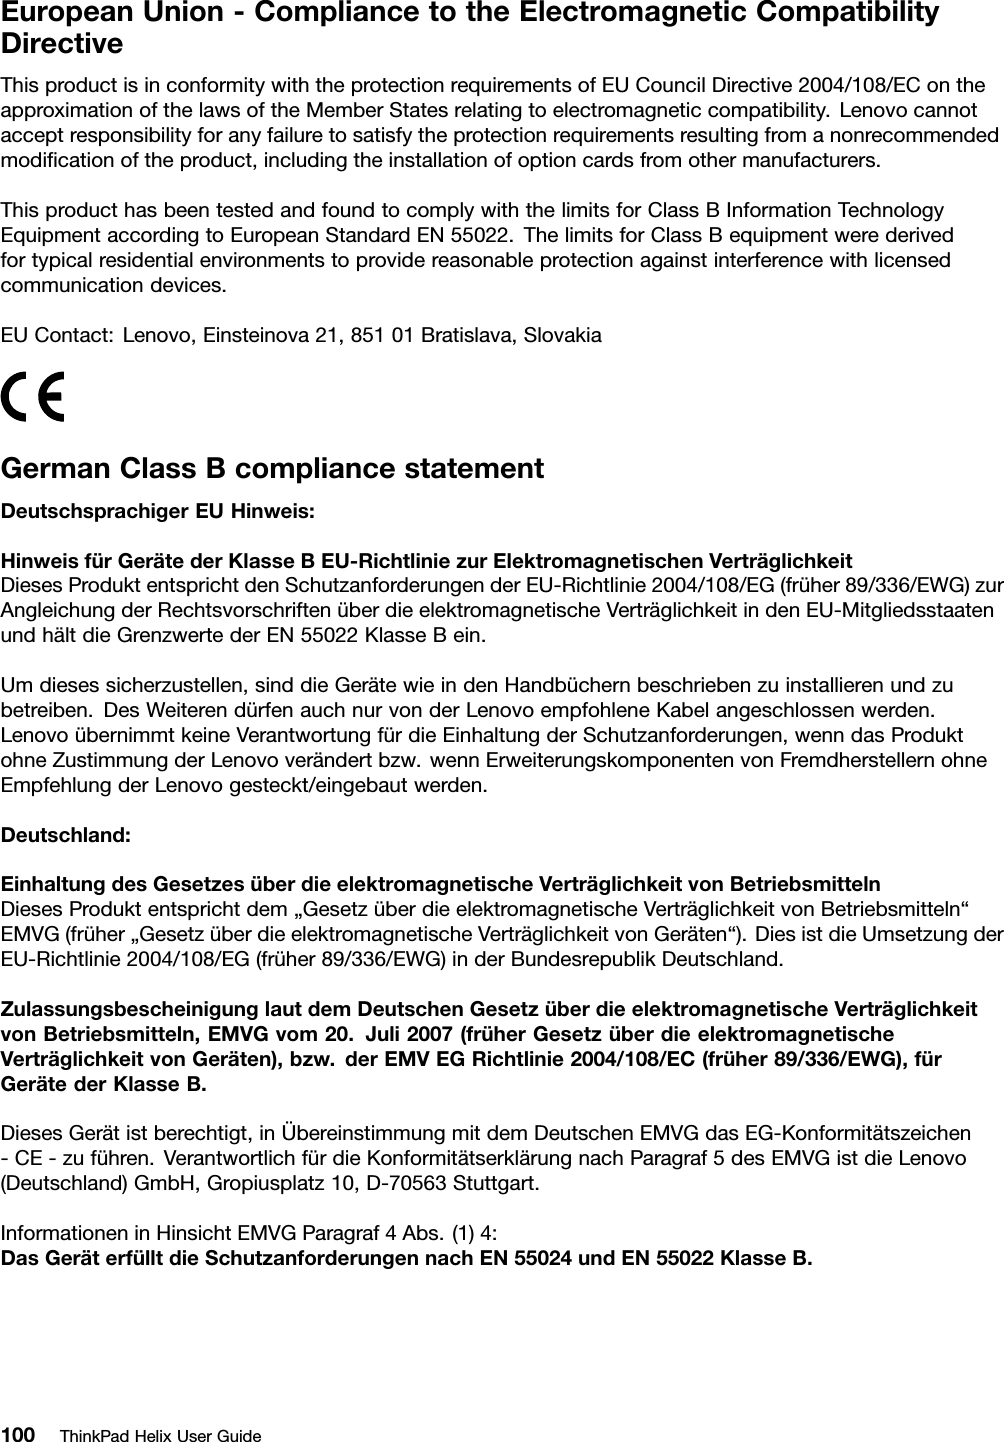 EuropeanUnion-CompliancetotheElectromagneticCompatibilityDirectiveThisproductisinconformitywiththeprotectionrequirementsofEUCouncilDirective2004/108/EContheapproximationofthelawsoftheMemberStatesrelatingtoelectromagneticcompatibility.Lenovocannotacceptresponsibilityforanyfailuretosatisfytheprotectionrequirementsresultingfromanonrecommendedmodiﬁcationoftheproduct,includingtheinstallationofoptioncardsfromothermanufacturers.ThisproducthasbeentestedandfoundtocomplywiththelimitsforClassBInformationTechnologyEquipmentaccordingtoEuropeanStandardEN55022.ThelimitsforClassBequipmentwerederivedfortypicalresidentialenvironmentstoprovidereasonableprotectionagainstinterferencewithlicensedcommunicationdevices.EUContact:Lenovo,Einsteinova21,85101Bratislava,SlovakiaGermanClassBcompliancestatementDeutschsprachigerEUHinweis:HinweisfürGerätederKlasseBEU-RichtliniezurElektromagnetischenVerträglichkeitDiesesProduktentsprichtdenSchutzanforderungenderEU-Richtlinie2004/108/EG(früher89/336/EWG)zurAngleichungderRechtsvorschriftenüberdieelektromagnetischeVerträglichkeitindenEU-MitgliedsstaatenundhältdieGrenzwertederEN55022KlasseBein.Umdiesessicherzustellen,sinddieGerätewieindenHandbüchernbeschriebenzuinstallierenundzubetreiben.DesWeiterendürfenauchnurvonderLenovoempfohleneKabelangeschlossenwerden.LenovoübernimmtkeineVerantwortungfürdieEinhaltungderSchutzanforderungen,wenndasProduktohneZustimmungderLenovoverändertbzw.wennErweiterungskomponentenvonFremdherstellernohneEmpfehlungderLenovogesteckt/eingebautwerden.Deutschland:EinhaltungdesGesetzesüberdieelektromagnetischeVerträglichkeitvonBetriebsmittelnDiesesProduktentsprichtdem„GesetzüberdieelektromagnetischeVerträglichkeitvonBetriebsmitteln“EMVG(früher„GesetzüberdieelektromagnetischeVerträglichkeitvonGeräten“).DiesistdieUmsetzungderEU-Richtlinie2004/108/EG(früher89/336/EWG)inderBundesrepublikDeutschland.ZulassungsbescheinigunglautdemDeutschenGesetzüberdieelektromagnetischeVerträglichkeitvonBetriebsmitteln,EMVGvom20.Juli2007(früherGesetzüberdieelektromagnetischeVerträglichkeitvonGeräten),bzw.derEMVEGRichtlinie2004/108/EC(früher89/336/EWG),fürGerätederKlasseB.DiesesGerätistberechtigt,inÜbereinstimmungmitdemDeutschenEMVGdasEG-Konformitätszeichen-CE-zuführen.VerantwortlichfürdieKonformitätserklärungnachParagraf5desEMVGistdieLenovo(Deutschland)GmbH,Gropiusplatz10,D-70563Stuttgart.InformationeninHinsichtEMVGParagraf4Abs.(1)4:DasGeräterfülltdieSchutzanforderungennachEN55024undEN55022KlasseB.100ThinkPadHelixUserGuide